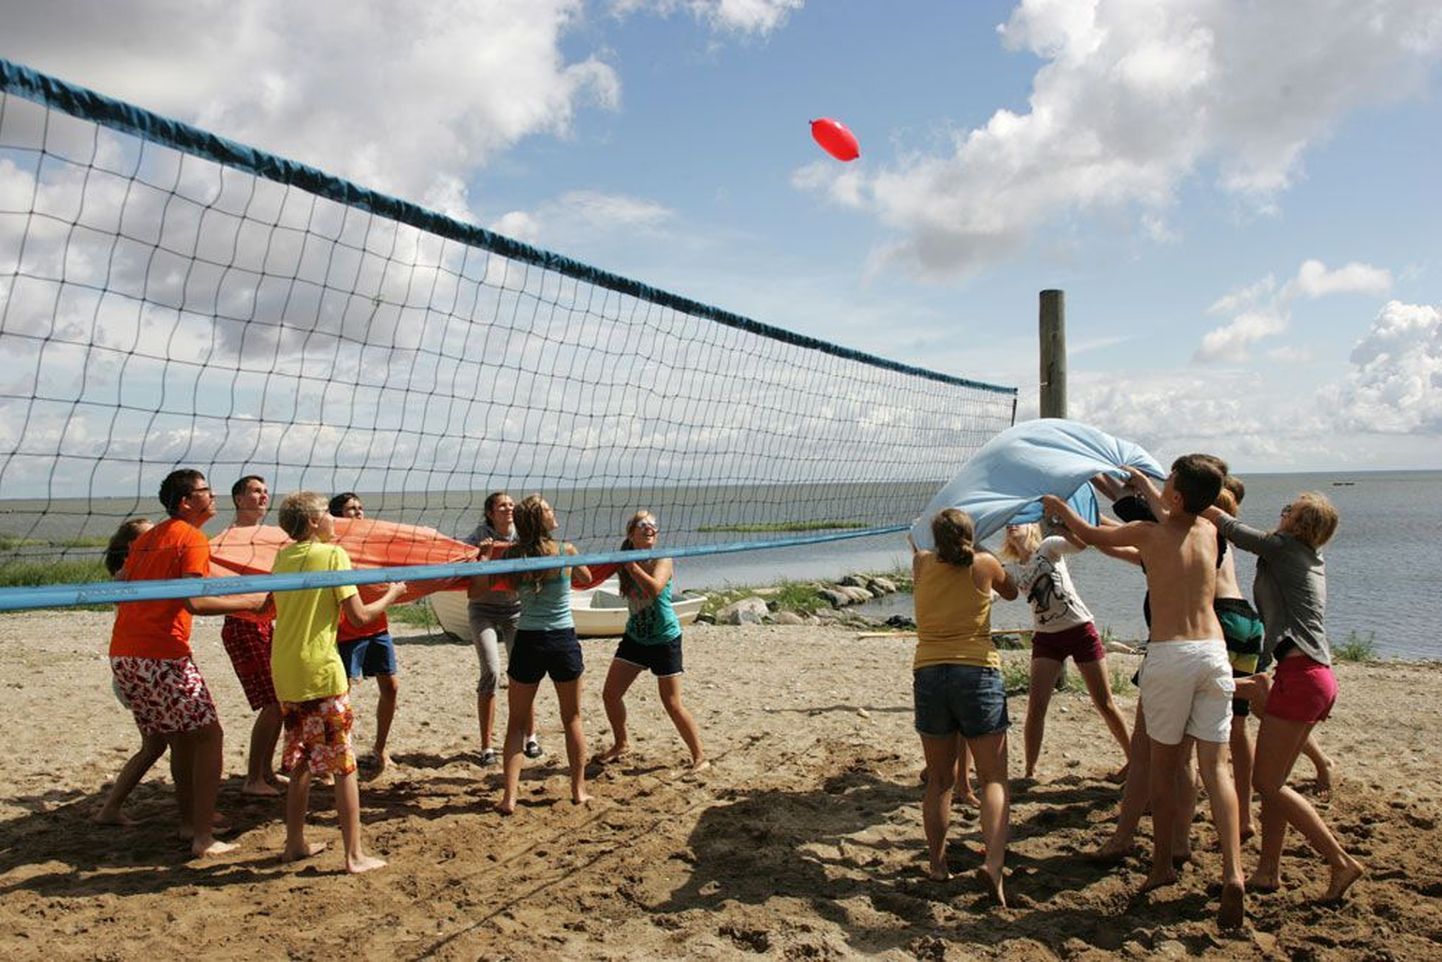 Keelelaagri noored mängisid vähest päikest ära kasutades kohalike teismelistega rannas omaleiutatud pallimängu, kus tuli tekkide abil vett täis õhupalli üle võrgu pilduda.